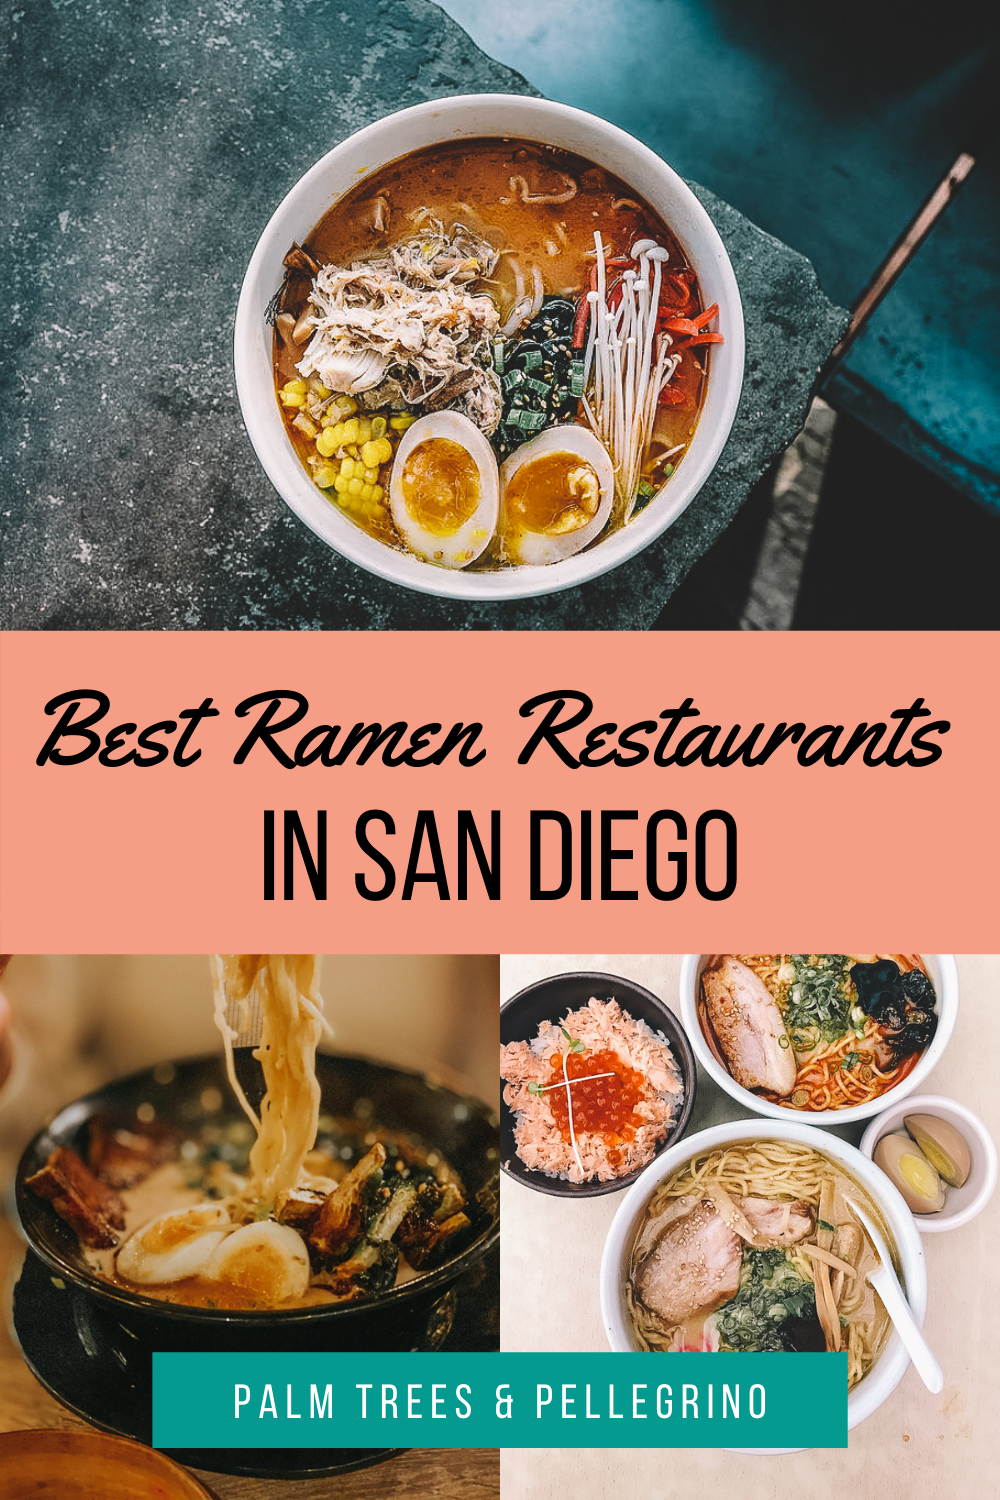 The Best Ramen Restaurants in San Diego